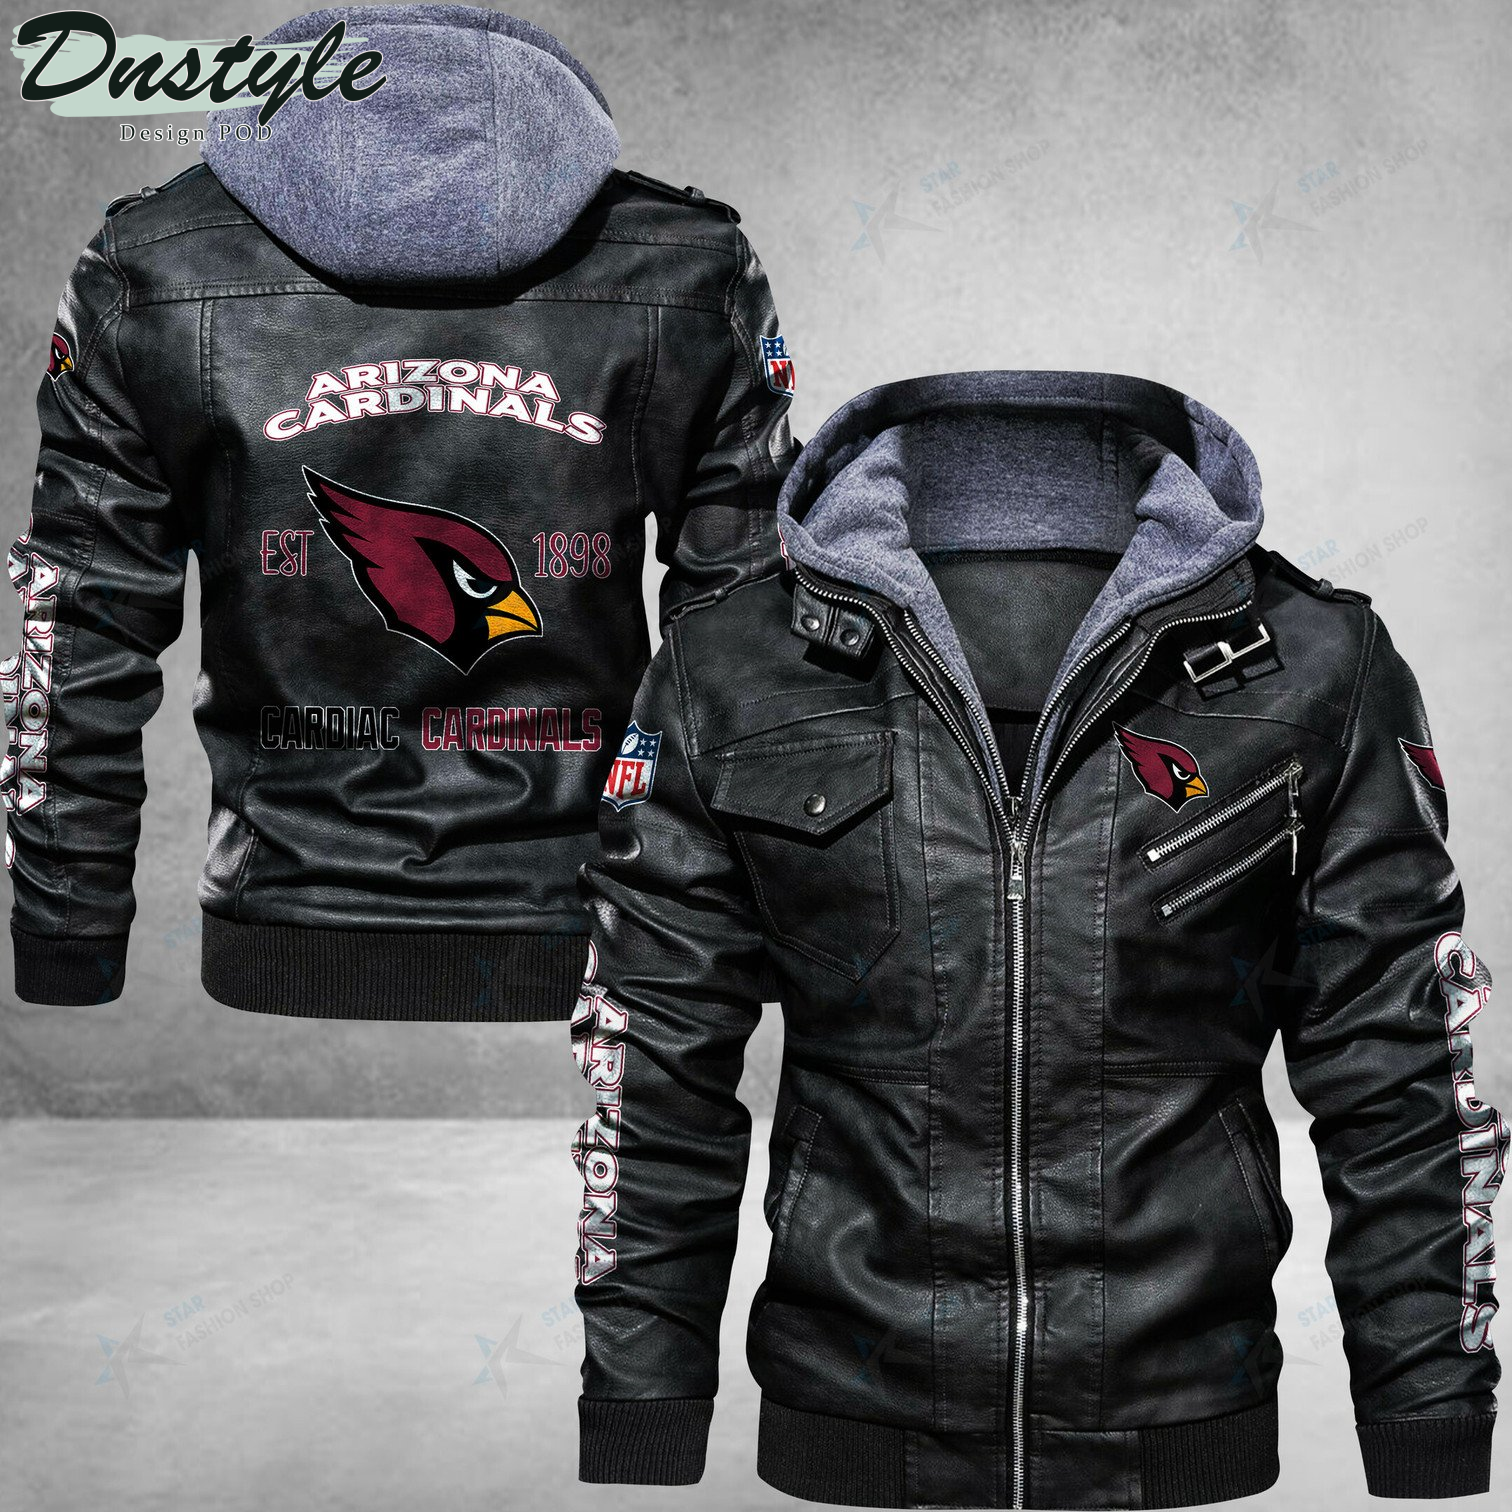 Arizona Cardinals Cardiac Cardinals Leather Jacket